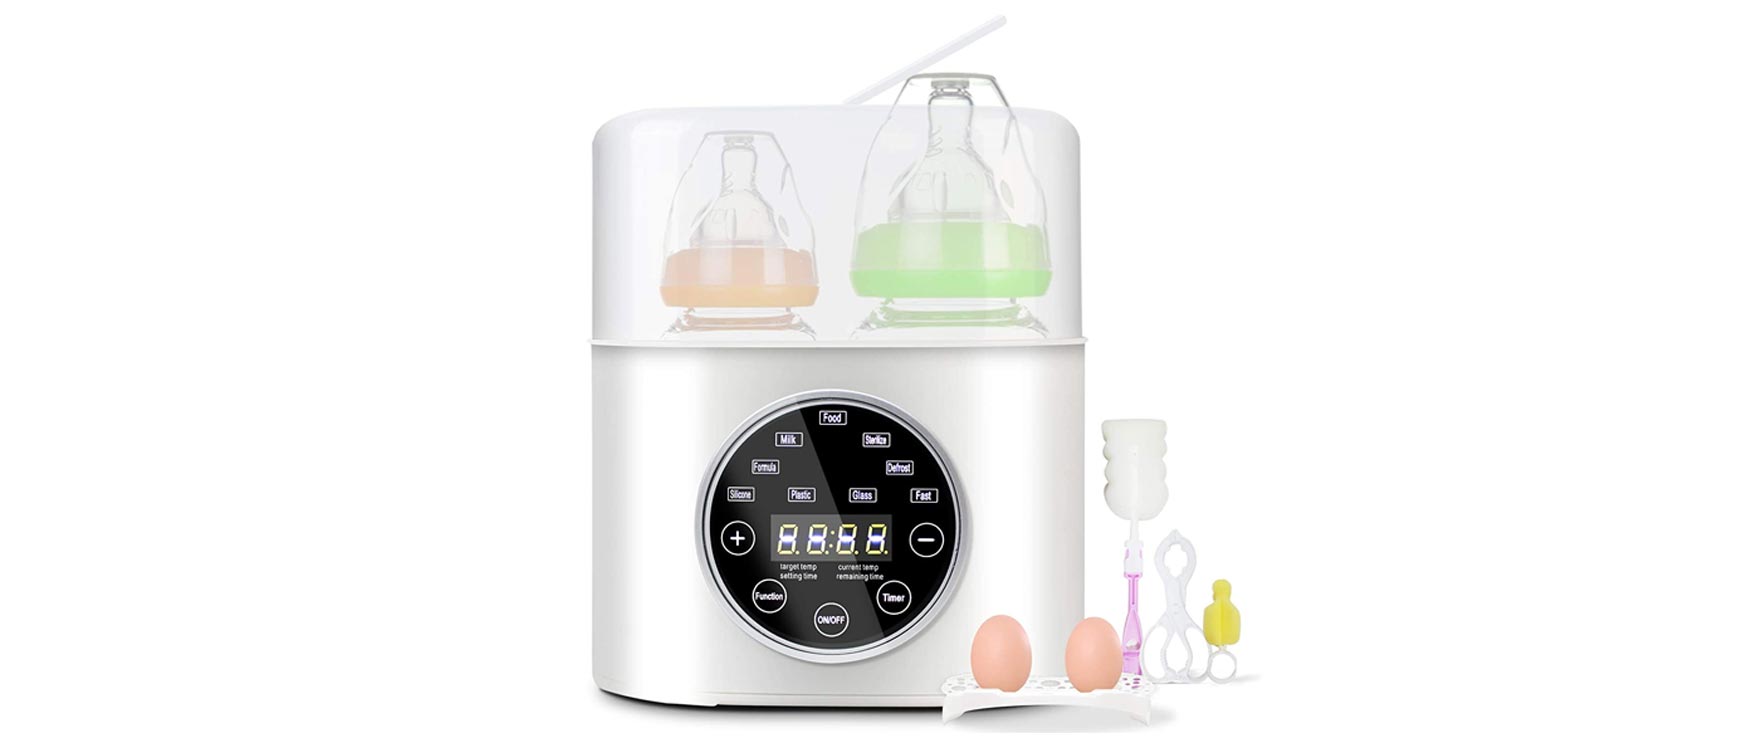 8. Grownsy Bottle Warmer 6-in-1 Fast Baby Food Heater